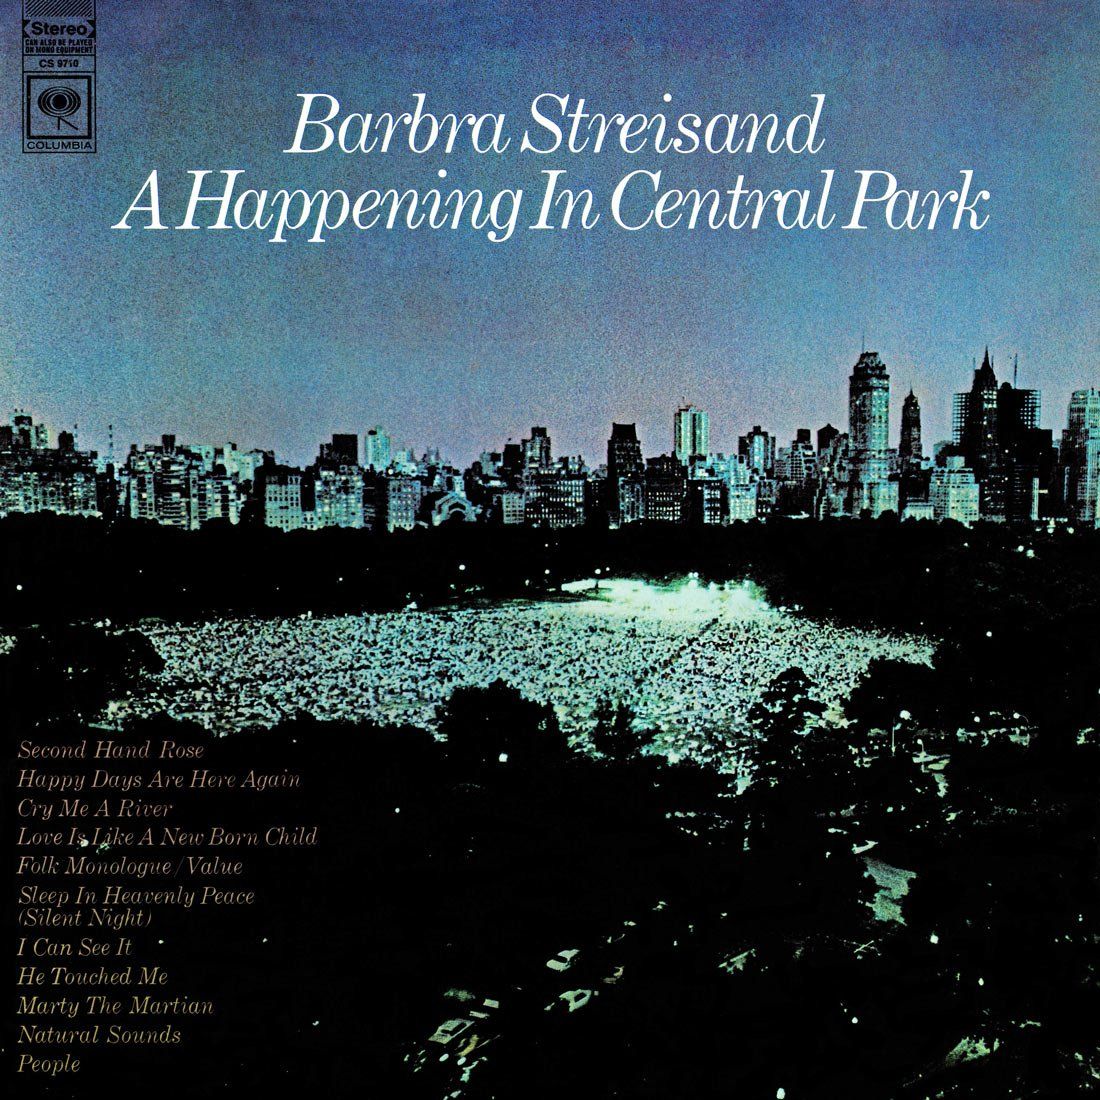 Happening in Central Park original album cover. Scan by Kevin Schlenker.